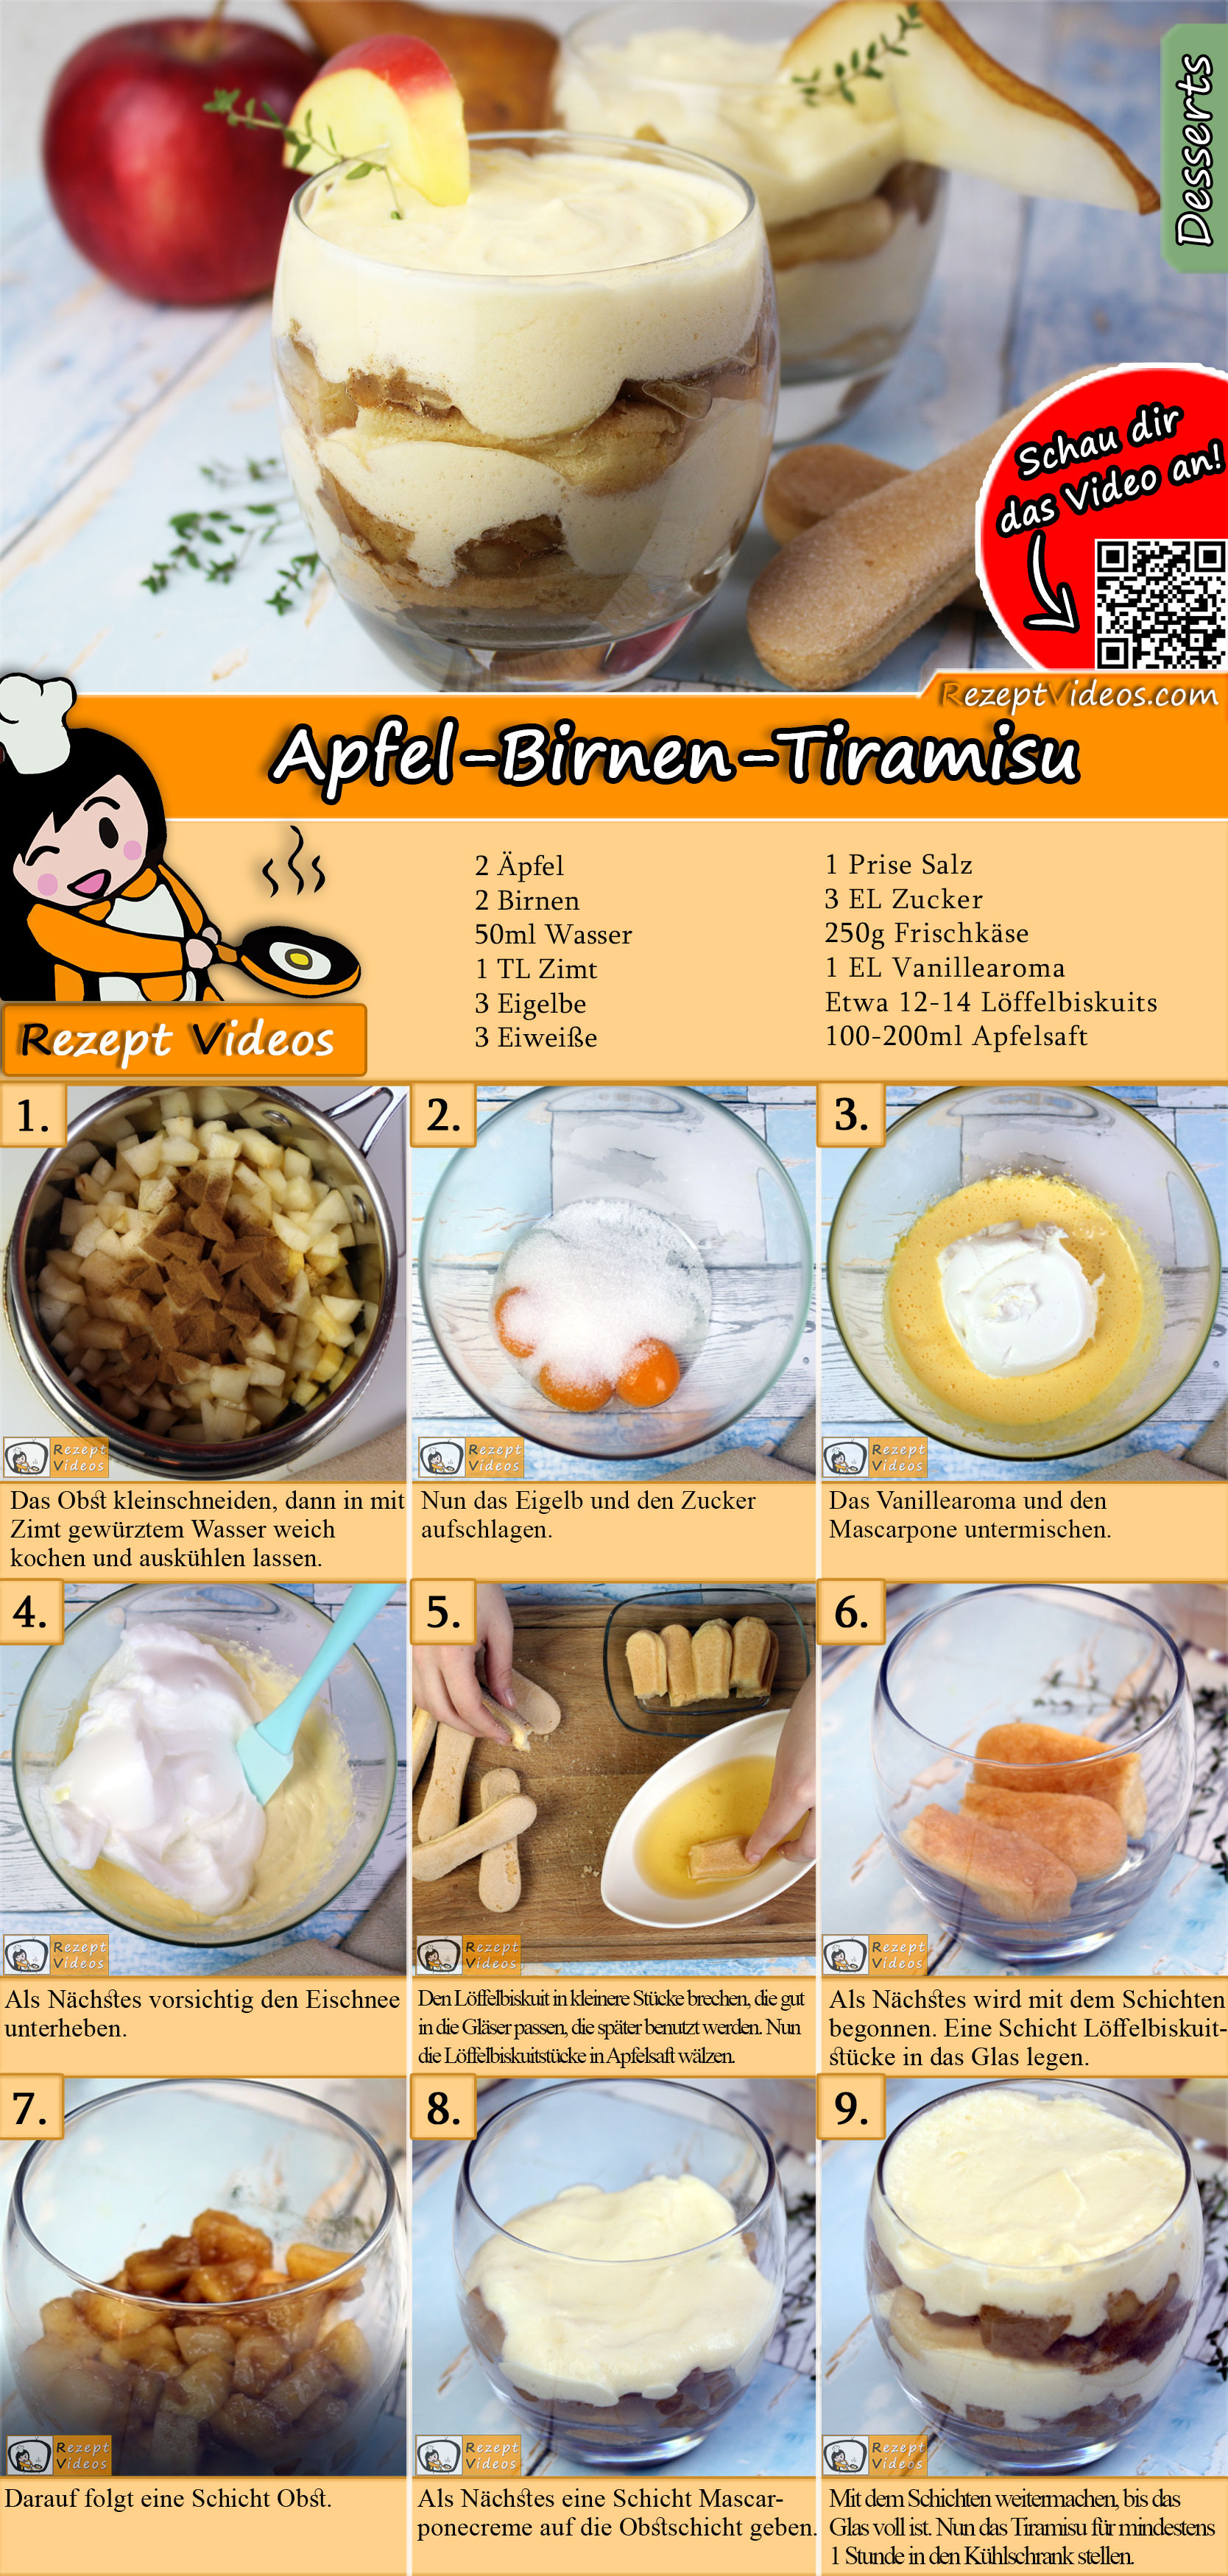 Apfel-Birnen-Tiramisu Rezept mit Video